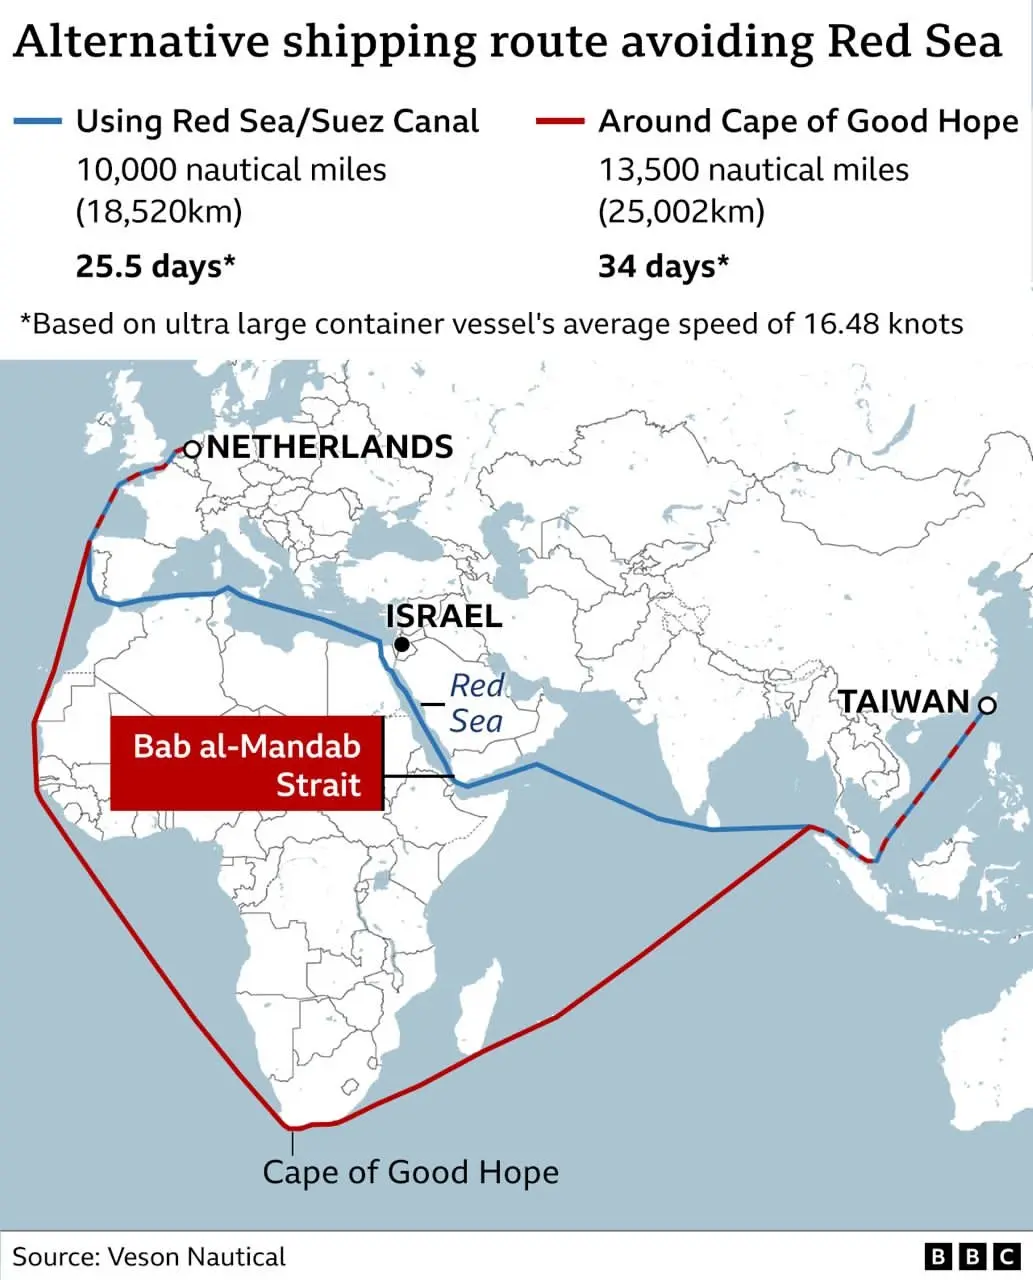 خط کشتیرانی مرسک تردد کشتیهای خود در دریای سرخ را از سر می گیرد